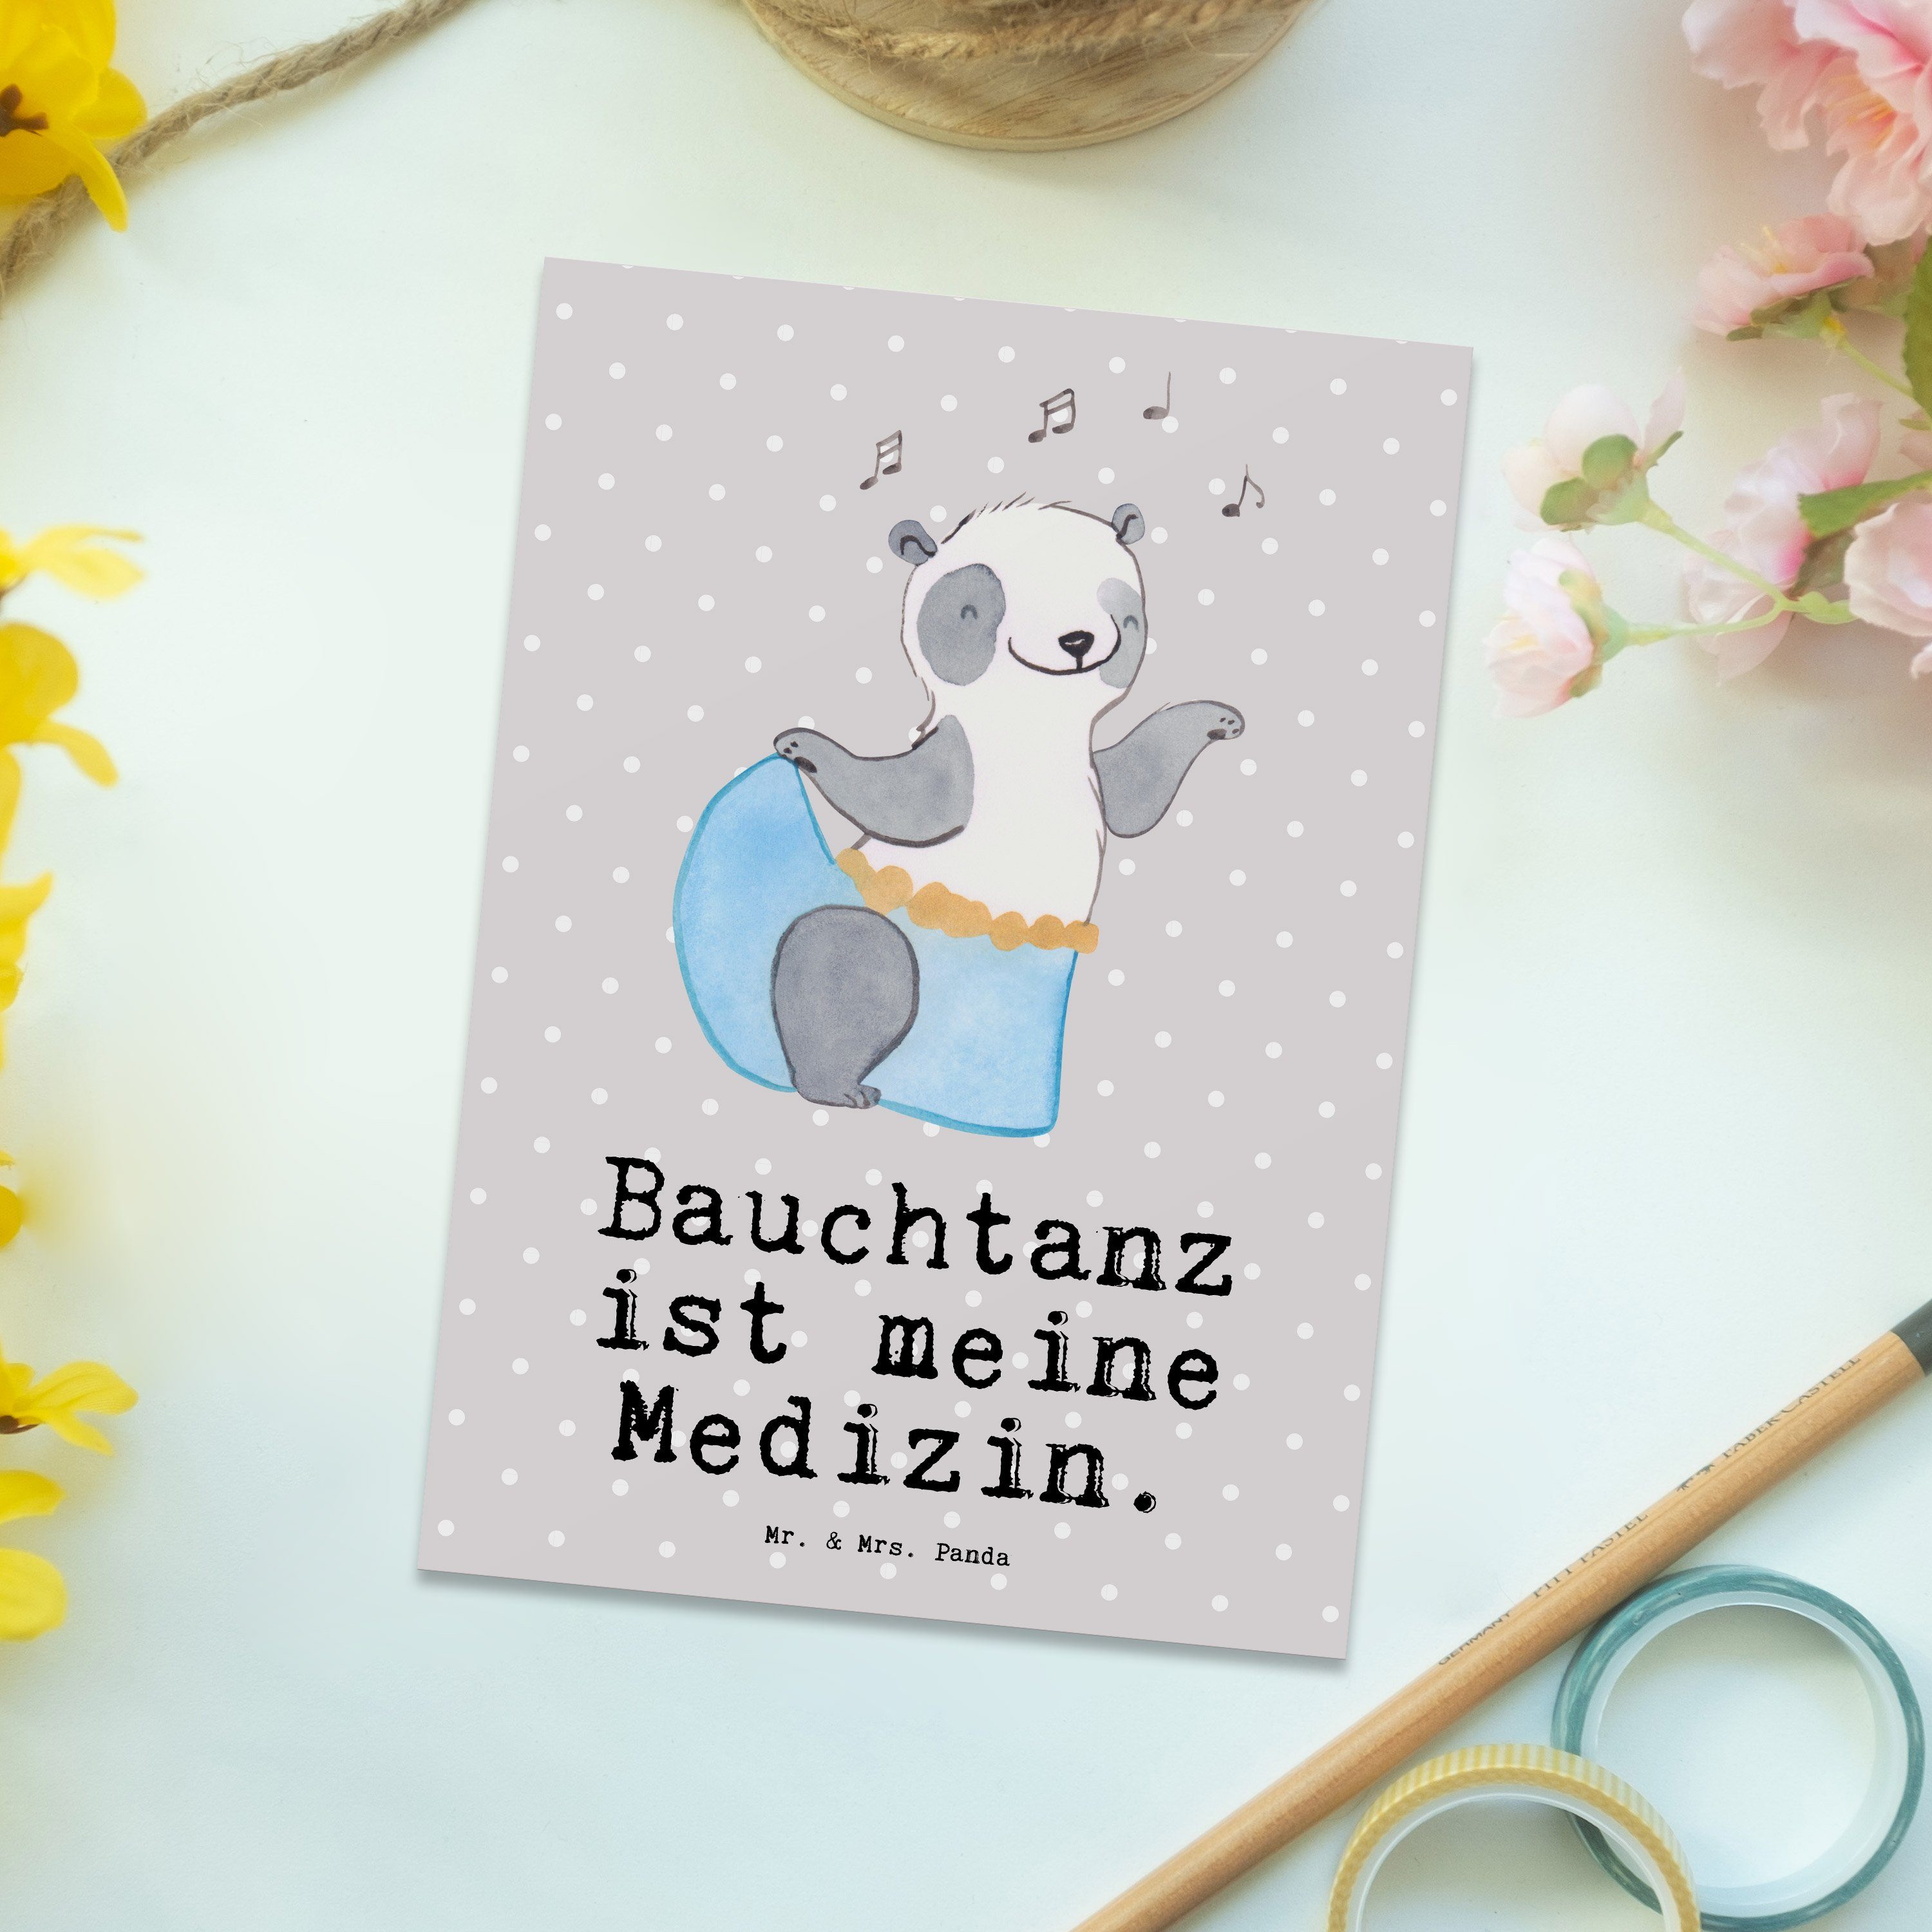 Pastell Panda Auszeichnung, - Medizin Bauchtanz Mrs. Panda - & Postkarte Geschenk, Grau Mr. Ansi